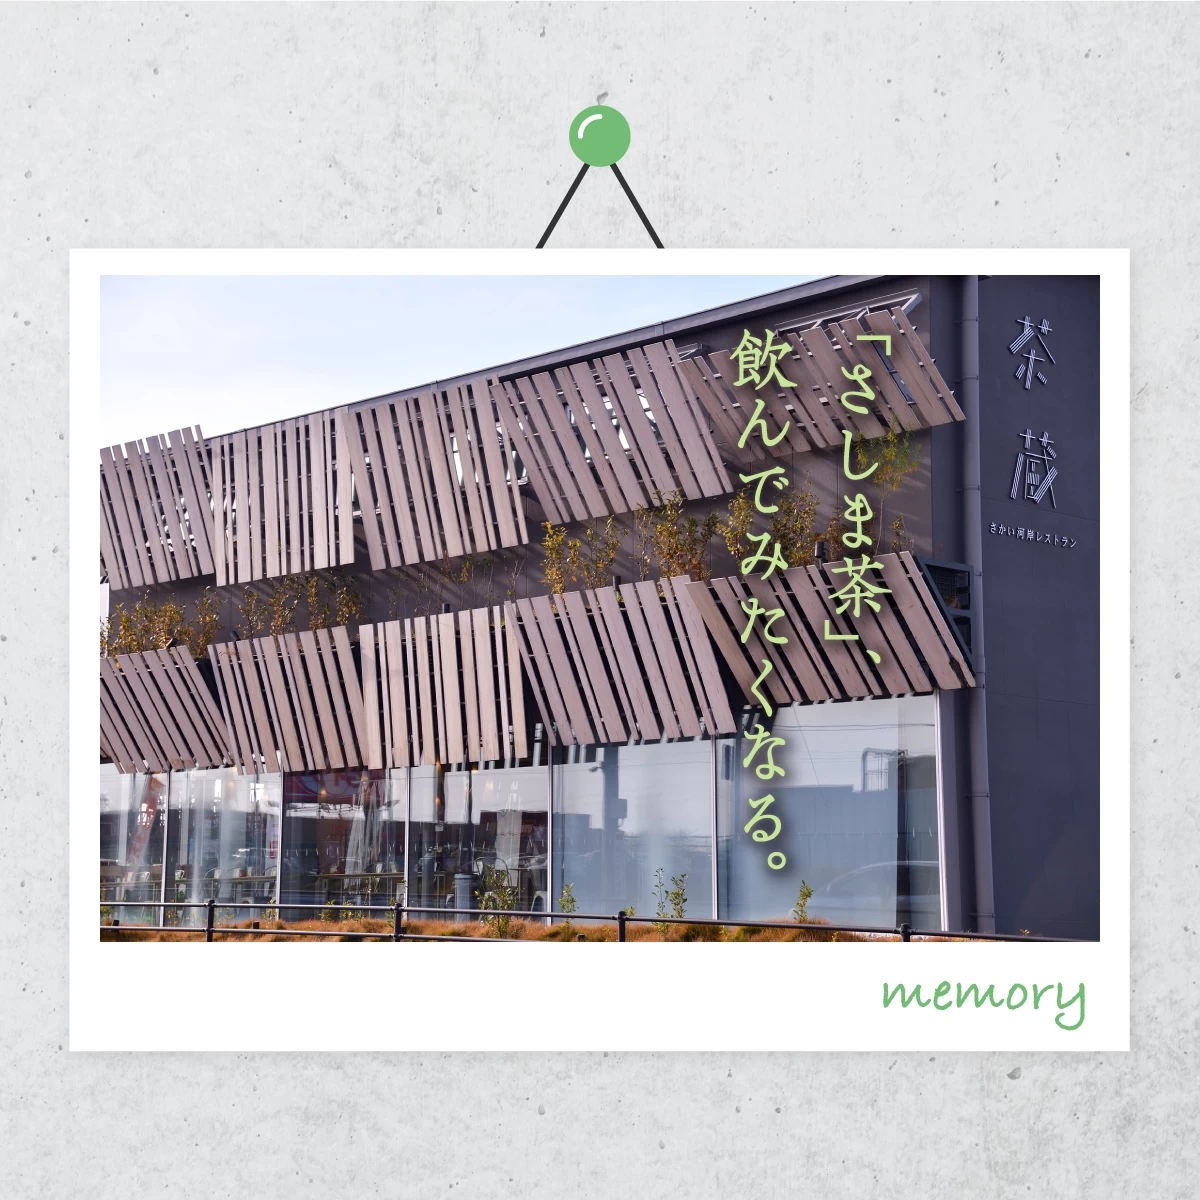 茨城県境町で隈研吾の建築巡り。カフェや美術館も訪れるひとり旅